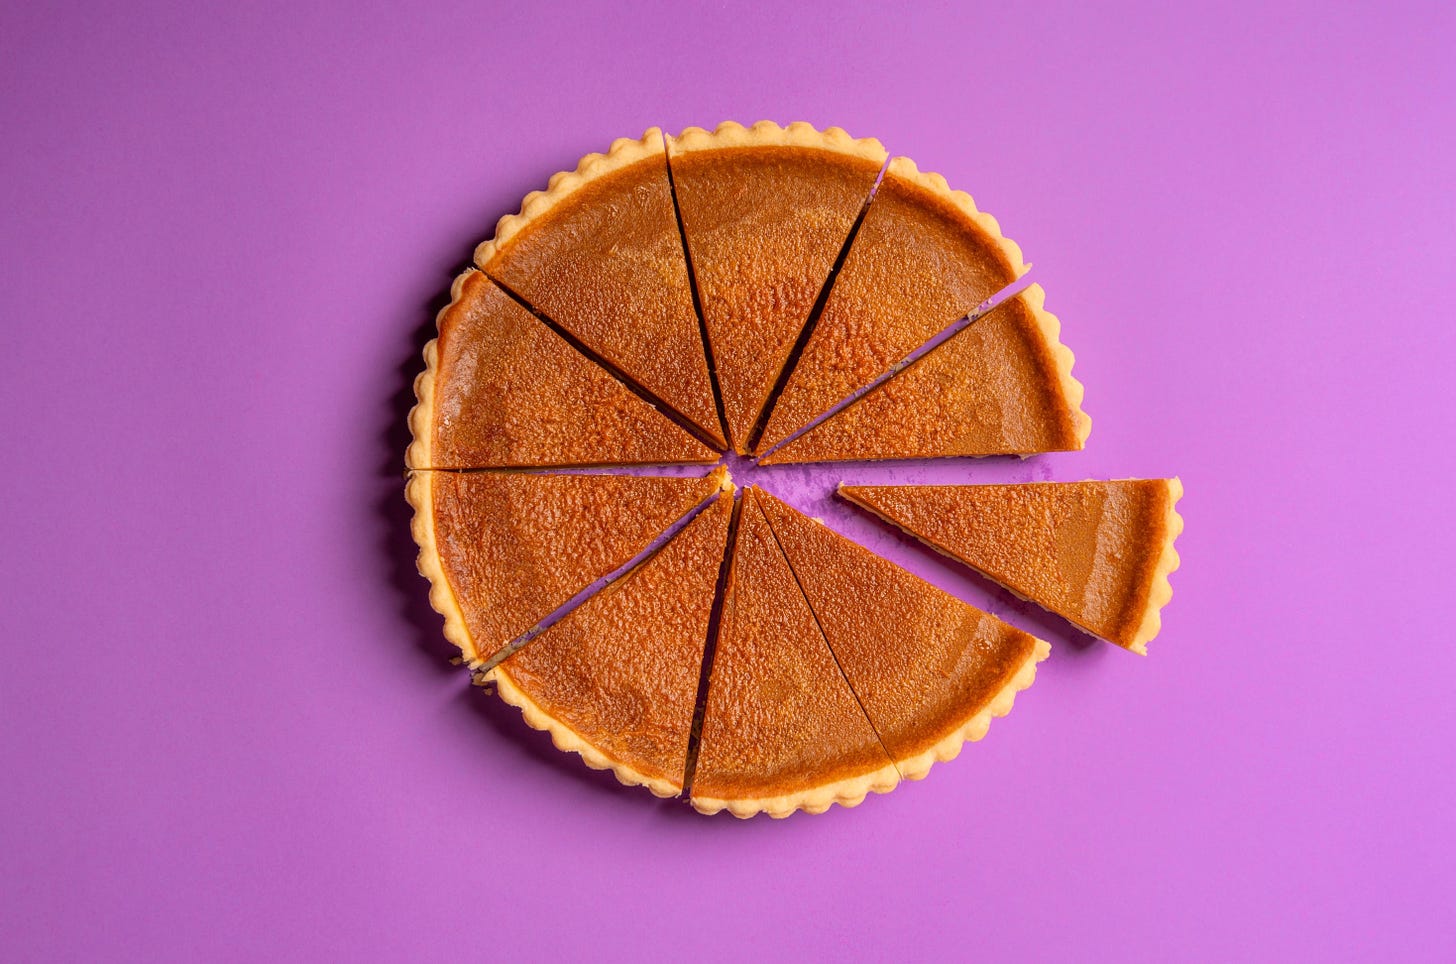 Pie cut into 10 equal pieces.